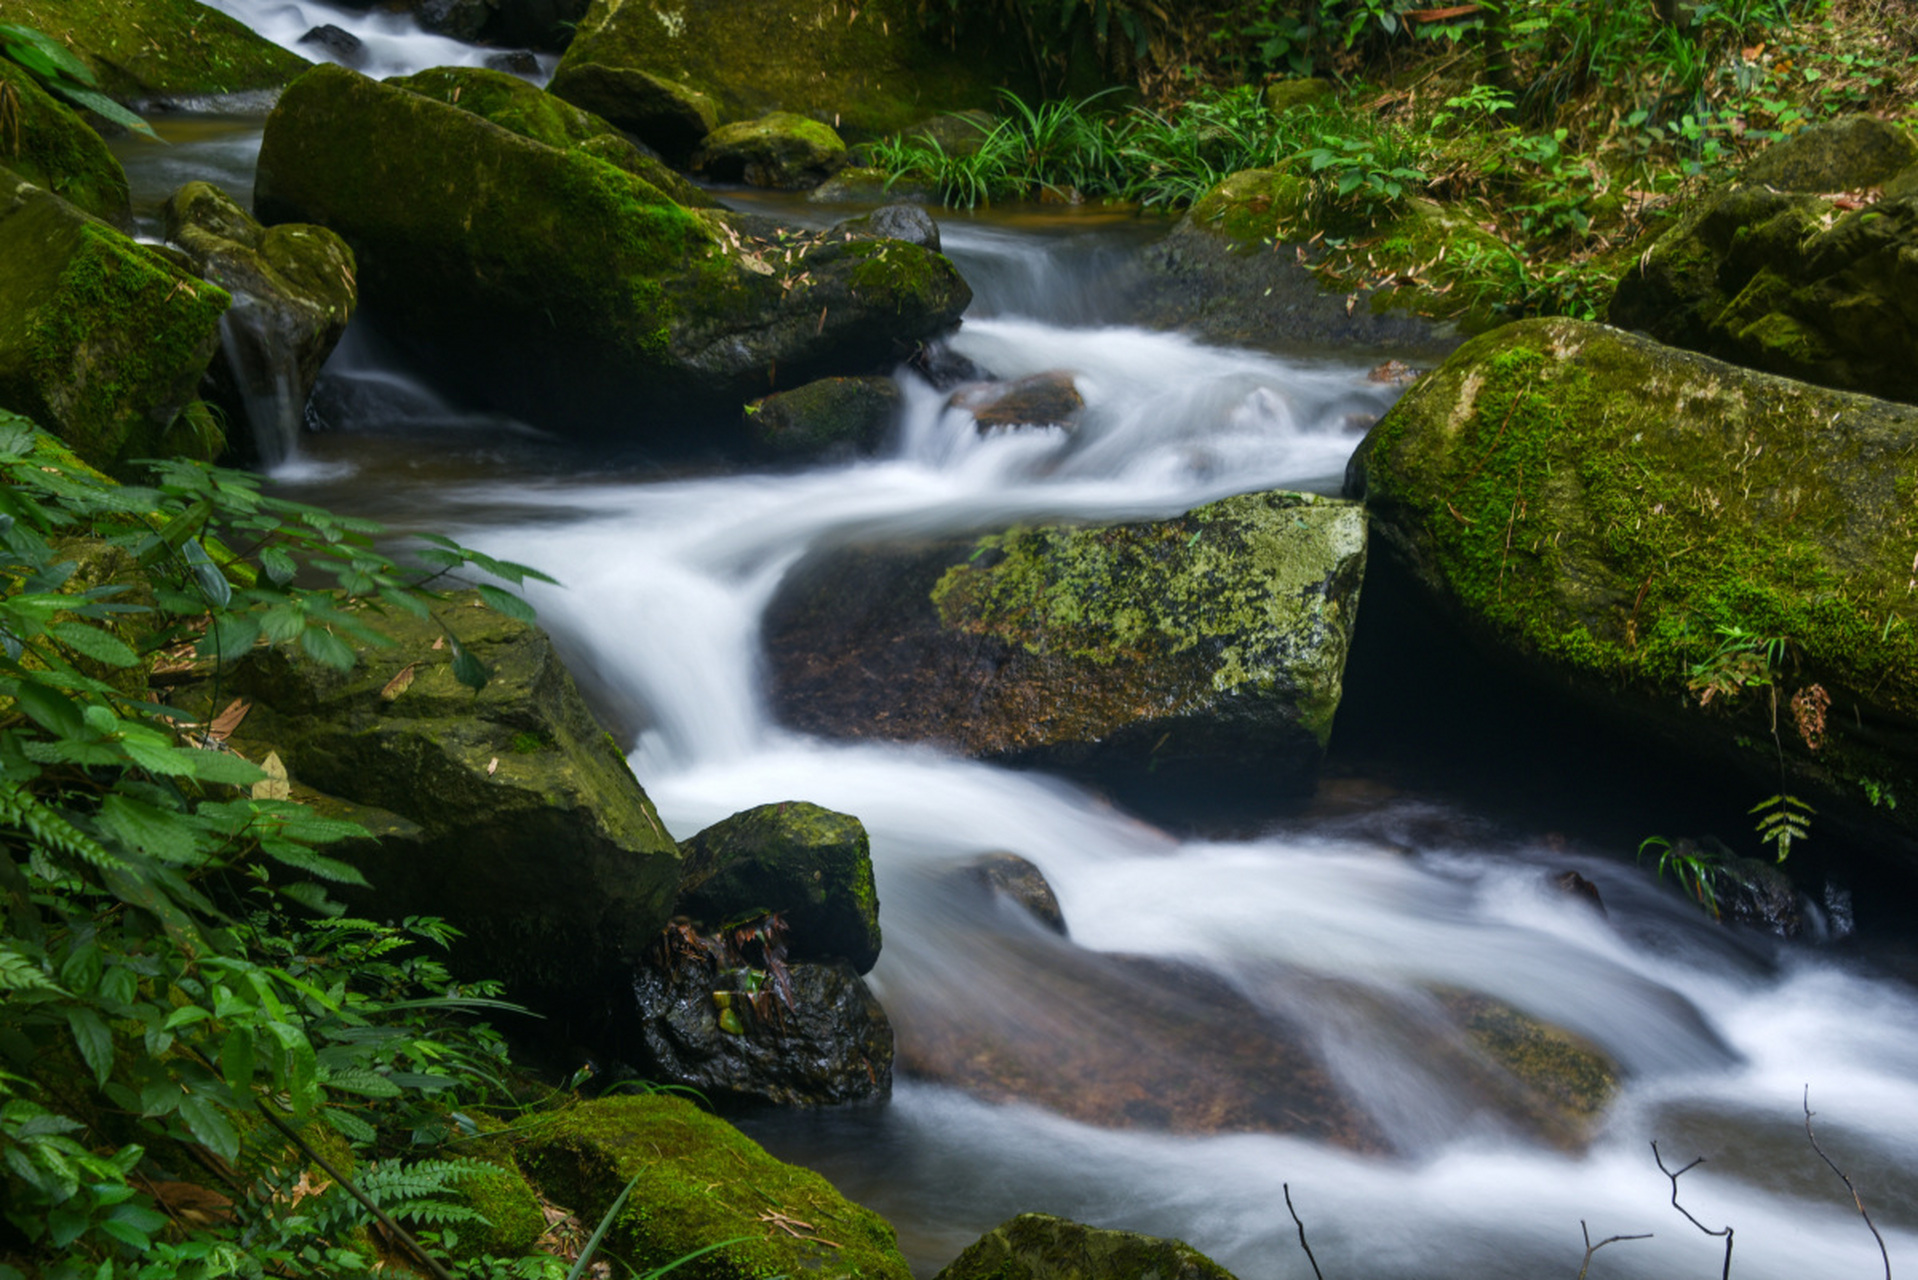 清澈的溪流,蜿蜒穿行于山谷间,水声潺潺宛如自然的歌声,将人们带入一